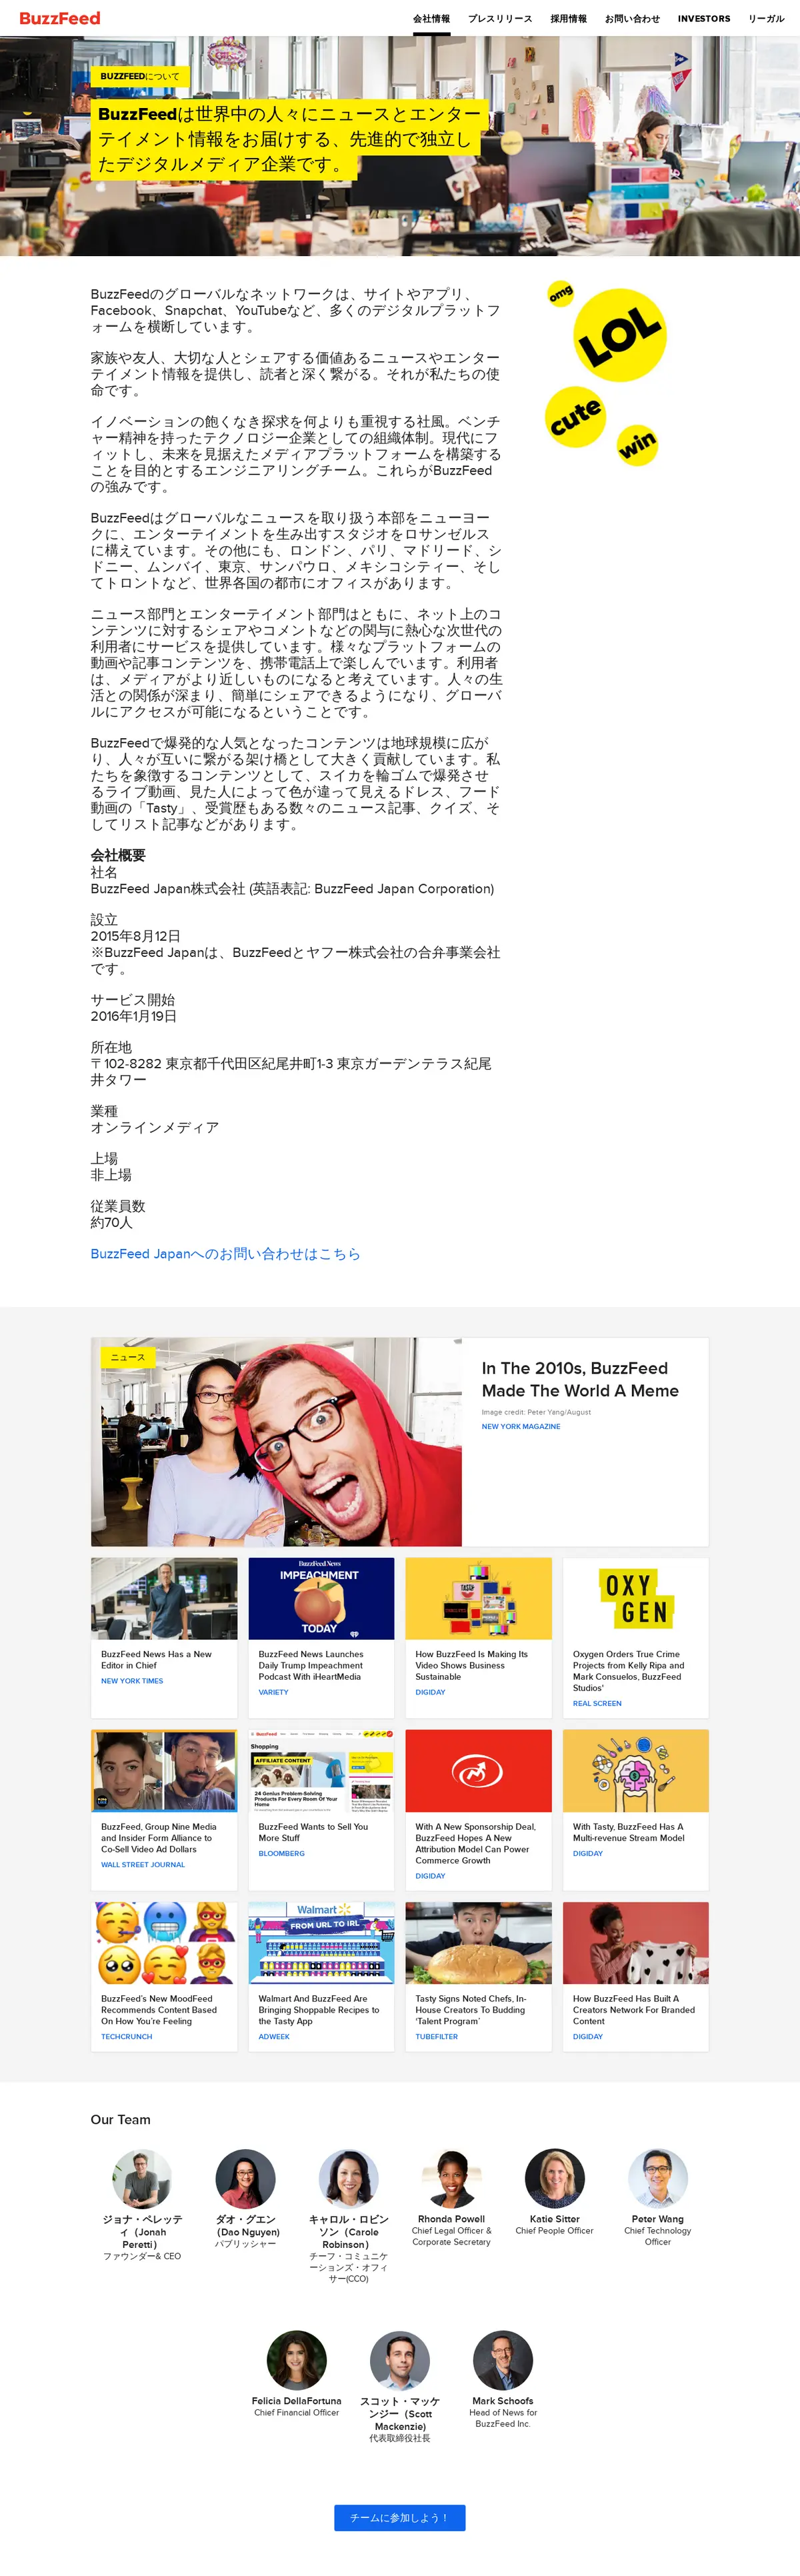 キャプチャ画面 会社名:BuzzFeed Japan株式会社プロジェクト名:BuzzFeed Japan株式会社 画面名:全国トップ デバイス名:PCカテゴリ:広告・クリエイティブタグ:全国トップ